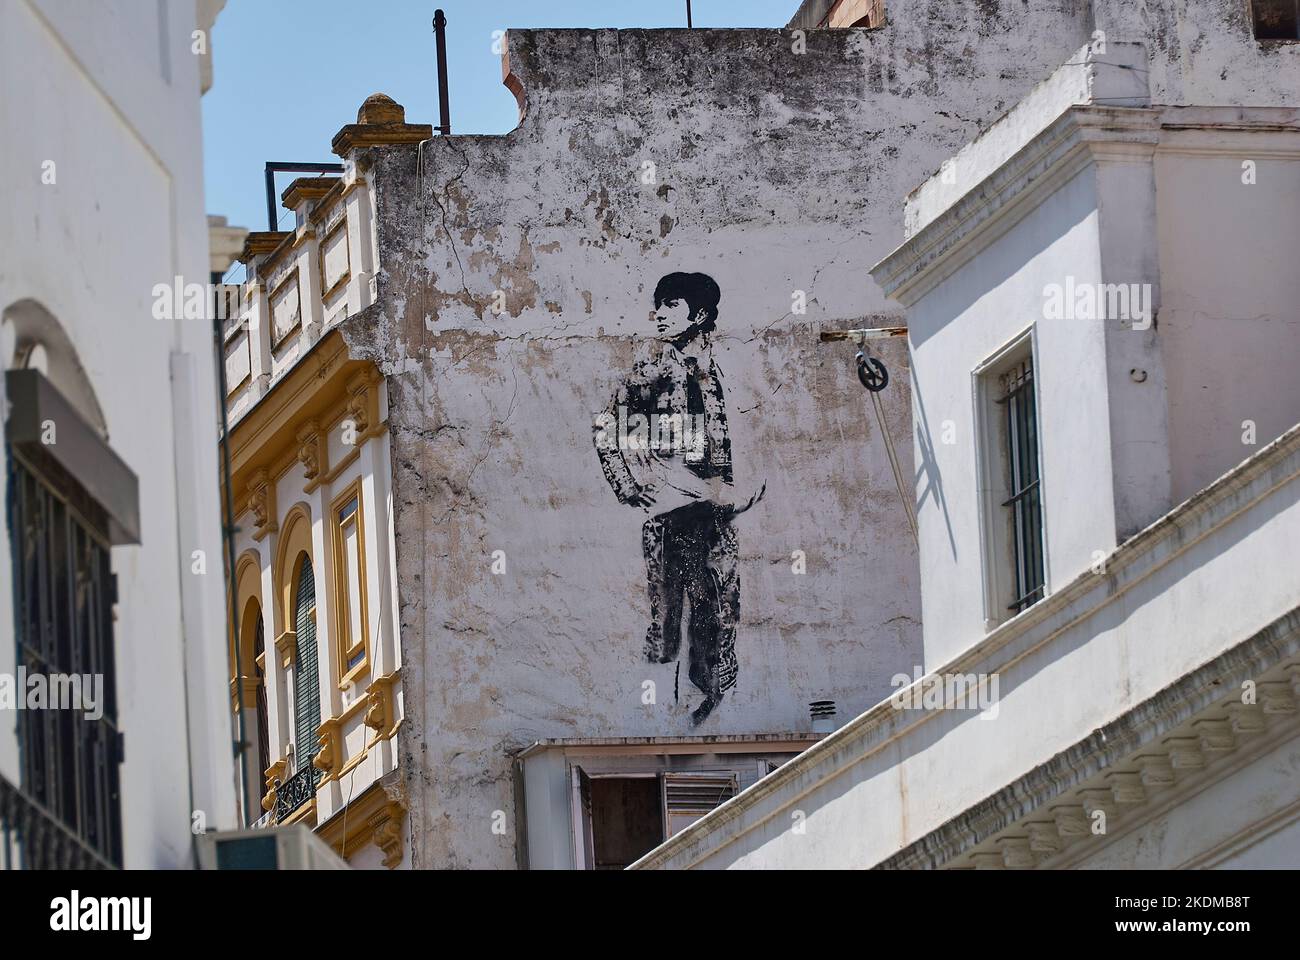 Sevilla, Espagne - 06 06 2014: street art sur un mur blanc montrant un torréghter dans le style graffiti Banque D'Images